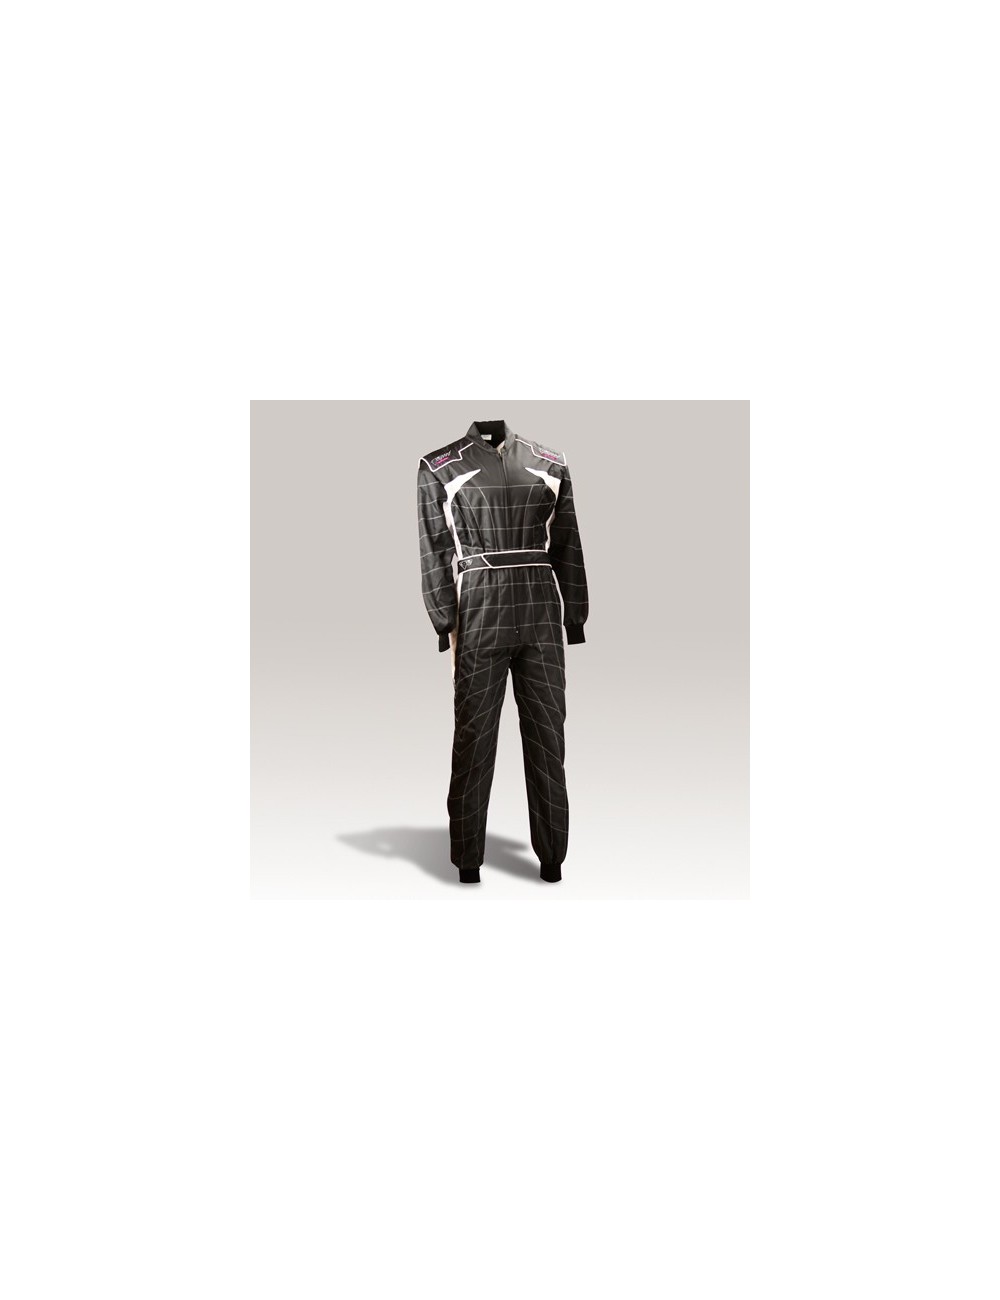 SPEED RACEWEAR Cordura Atlanta CS-2 traje negro / blanco